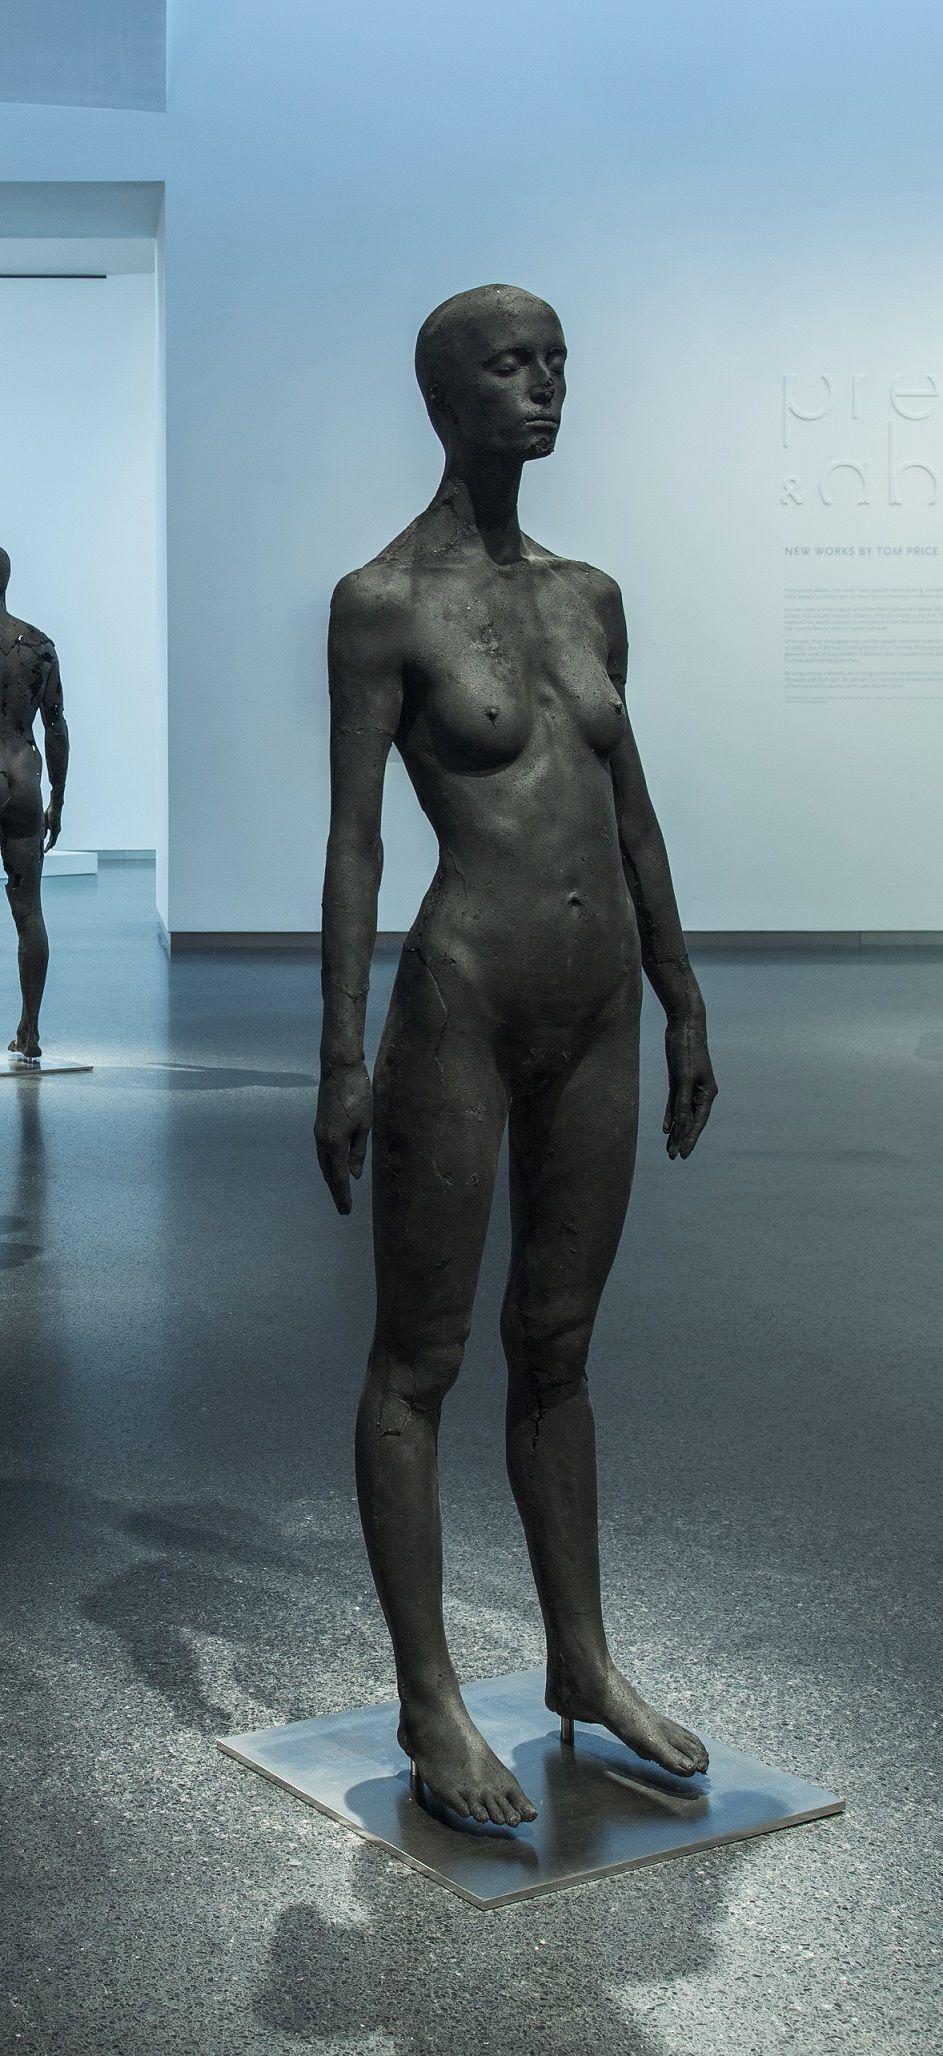 The Presence of Absence - Weiblich (I) von Tom Price - Kohleskulptur, nackter Körper